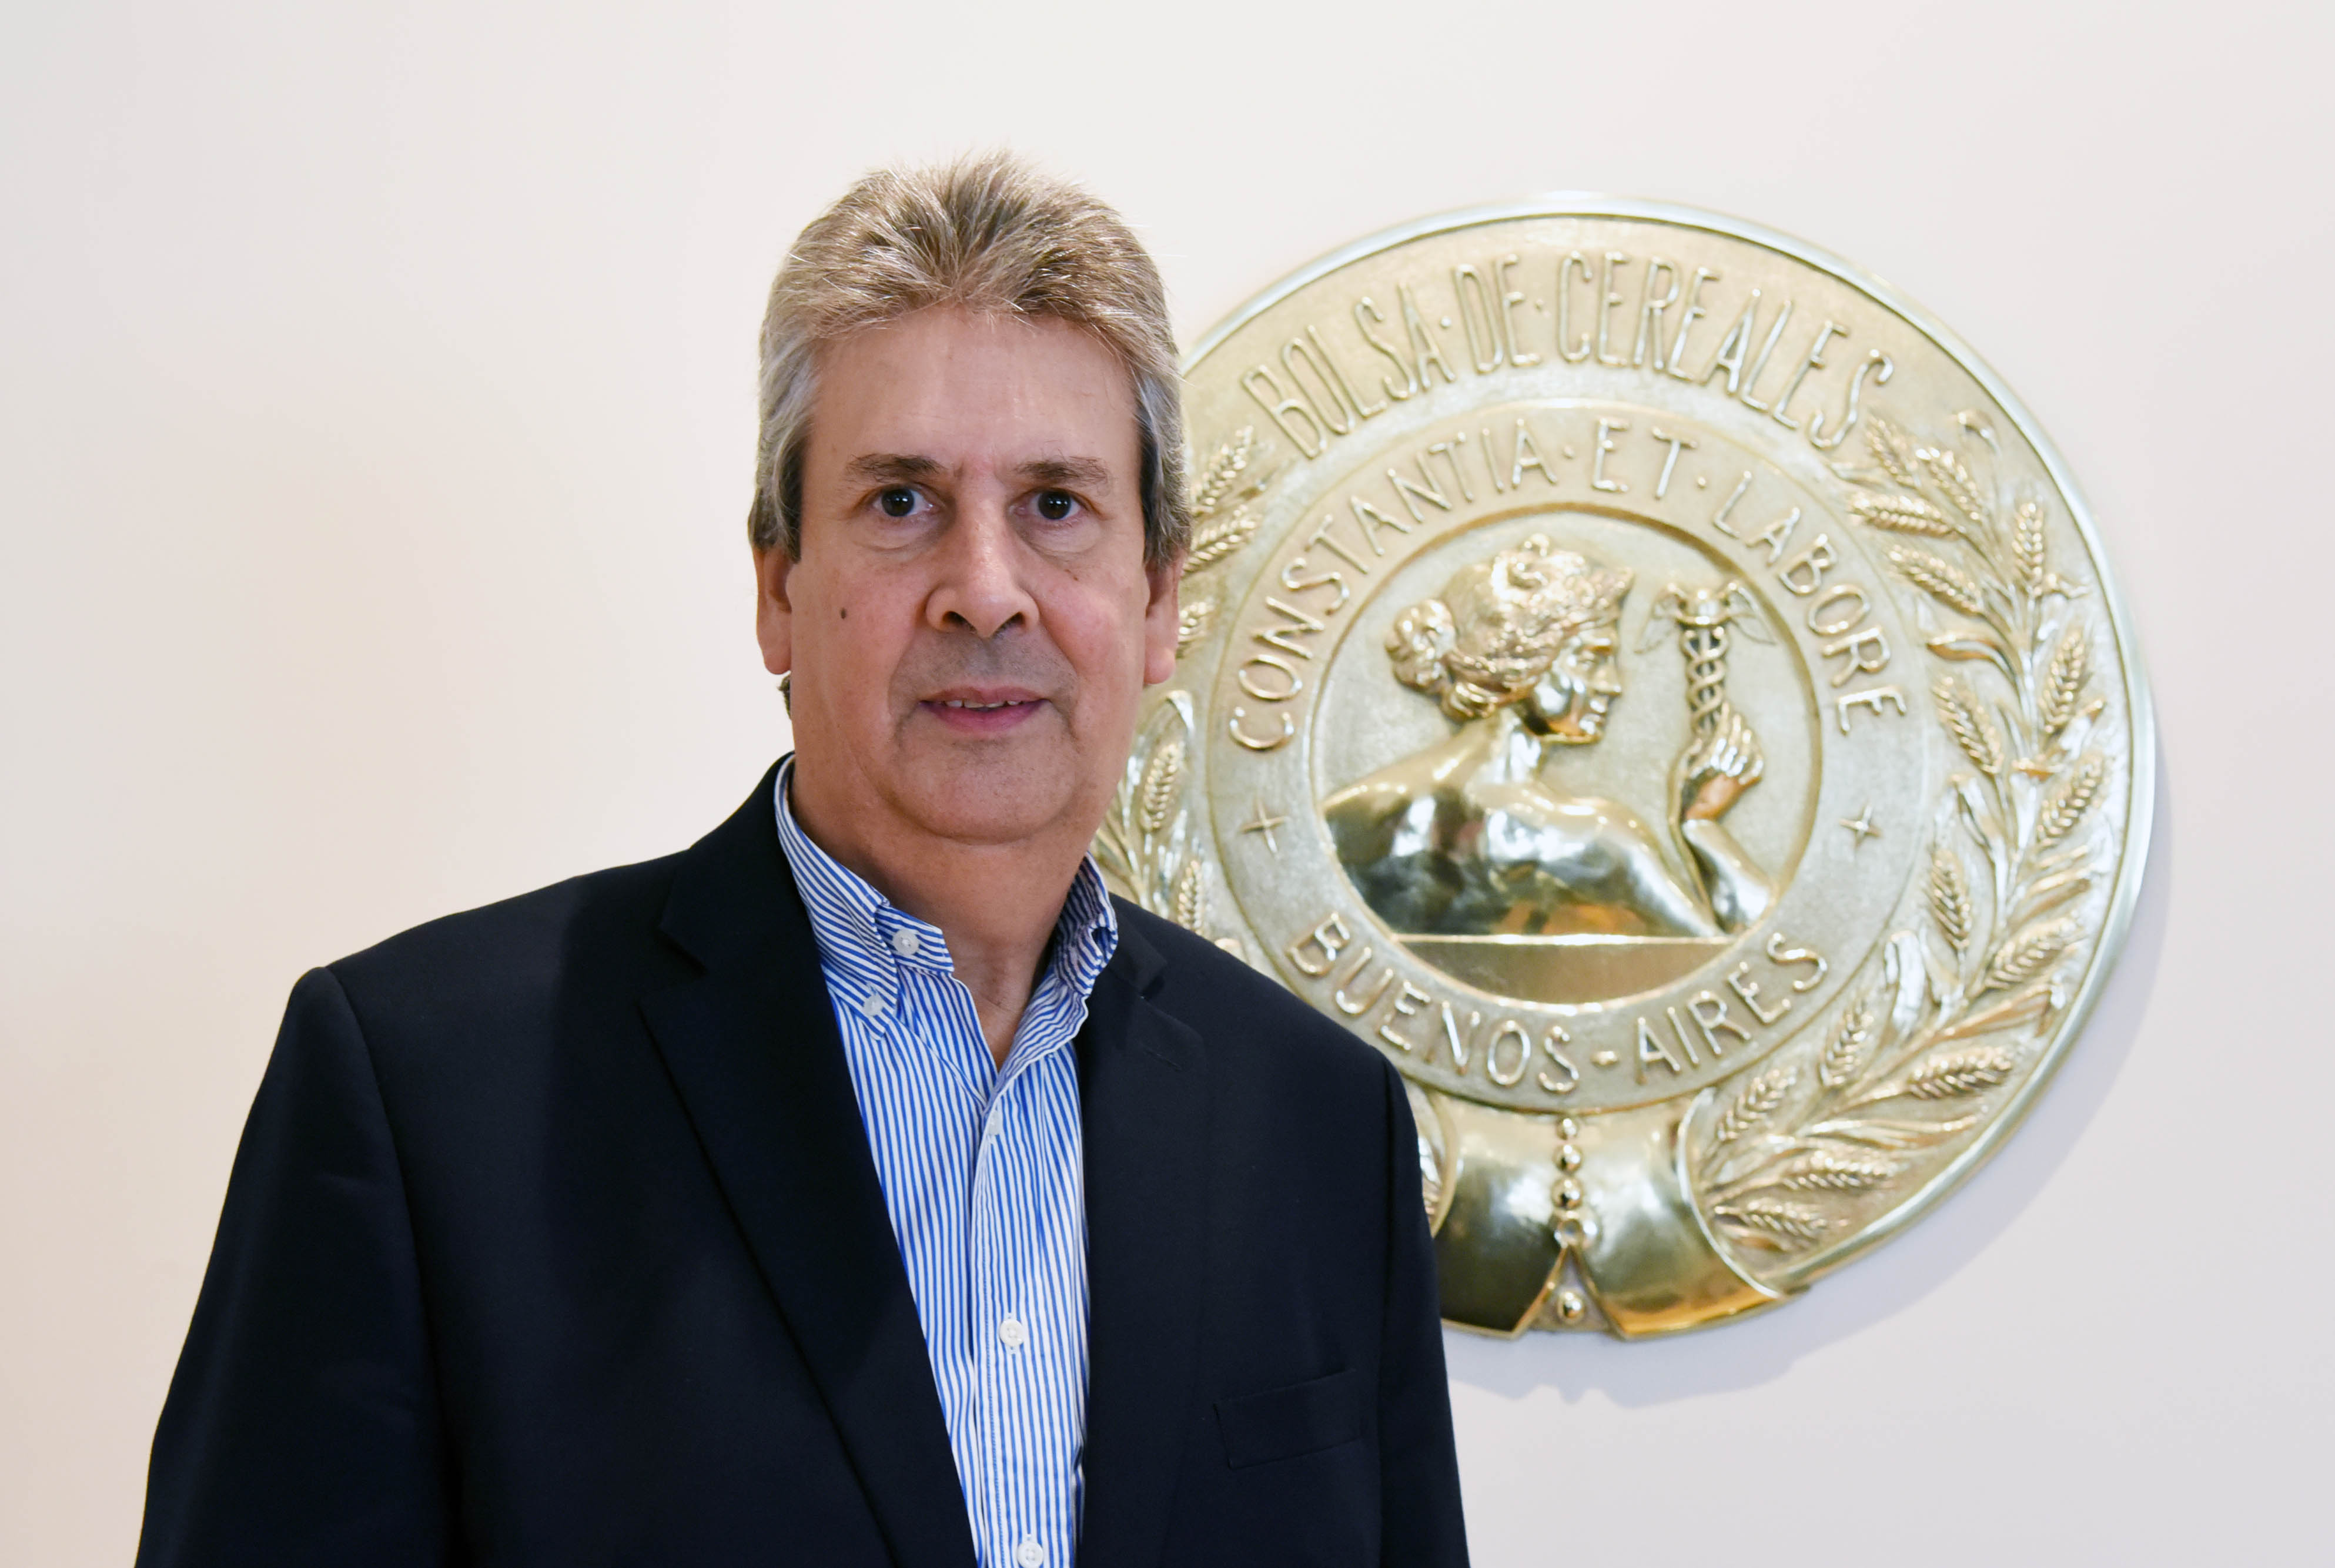 José Martins es el nuevo Presidente de la Bolsa de Cereales